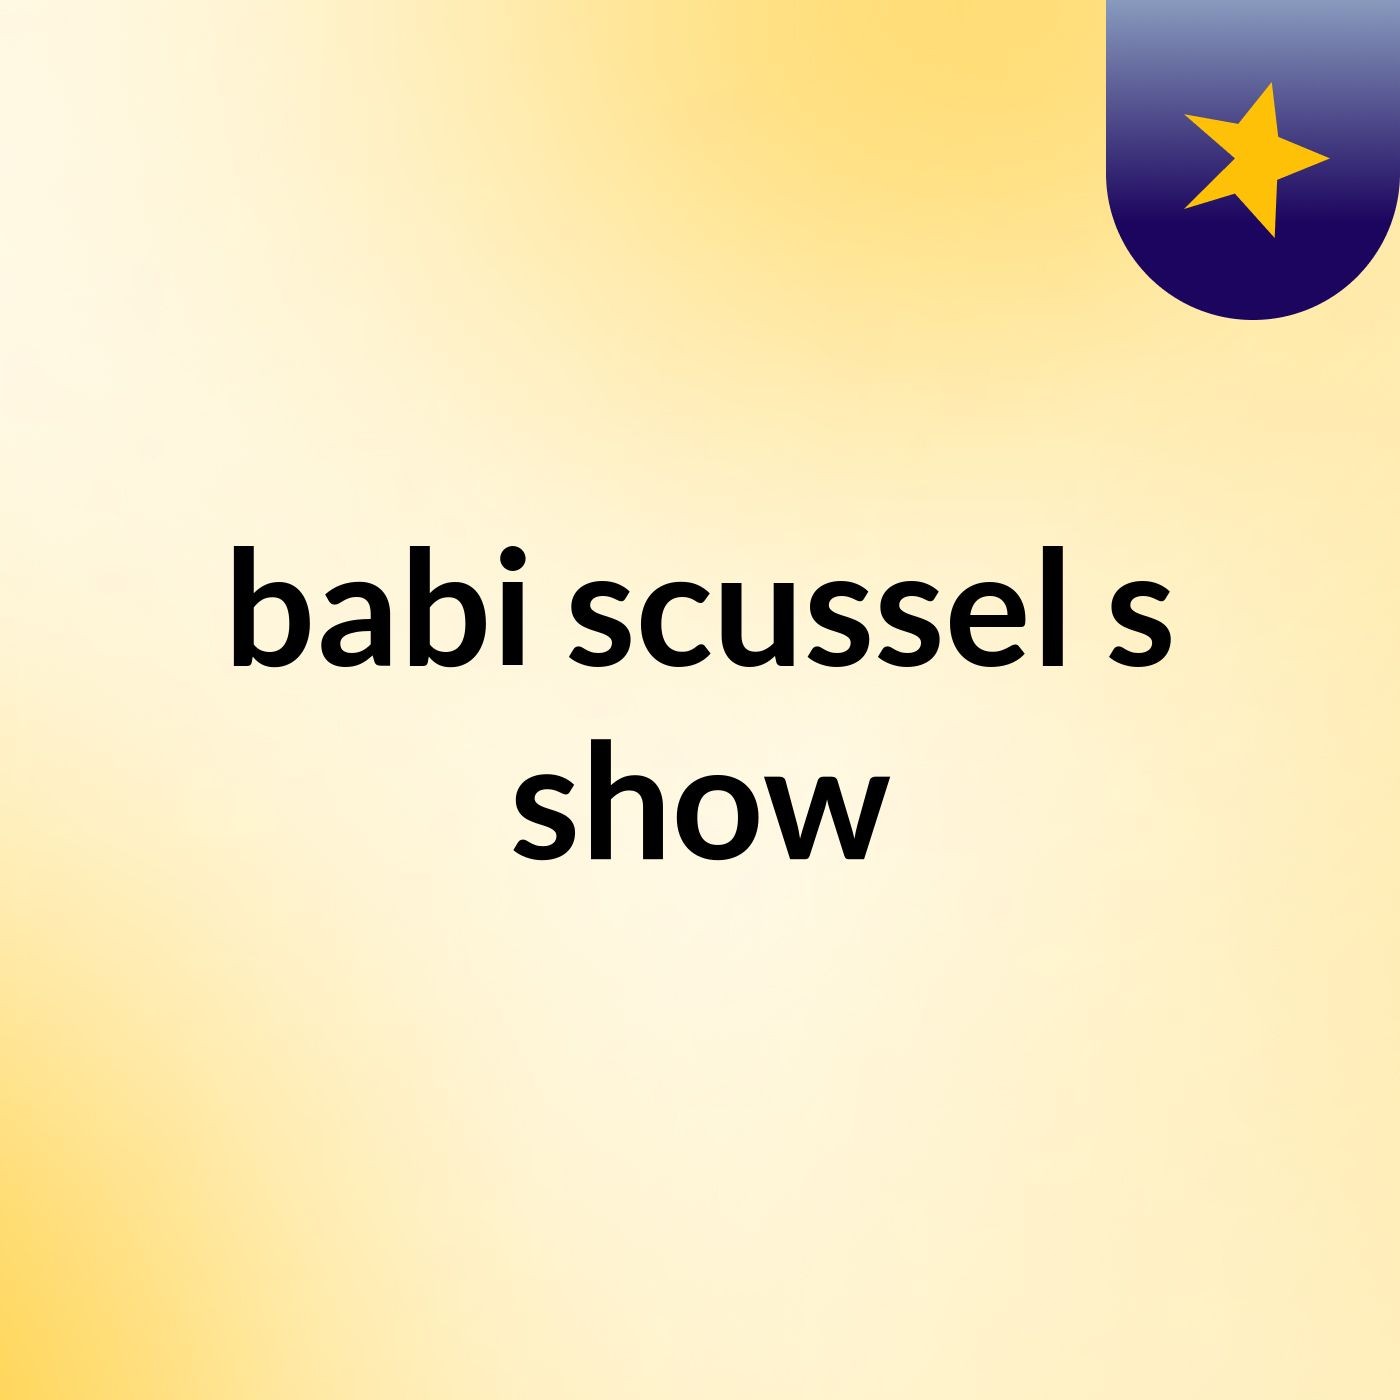 babi scussel's show